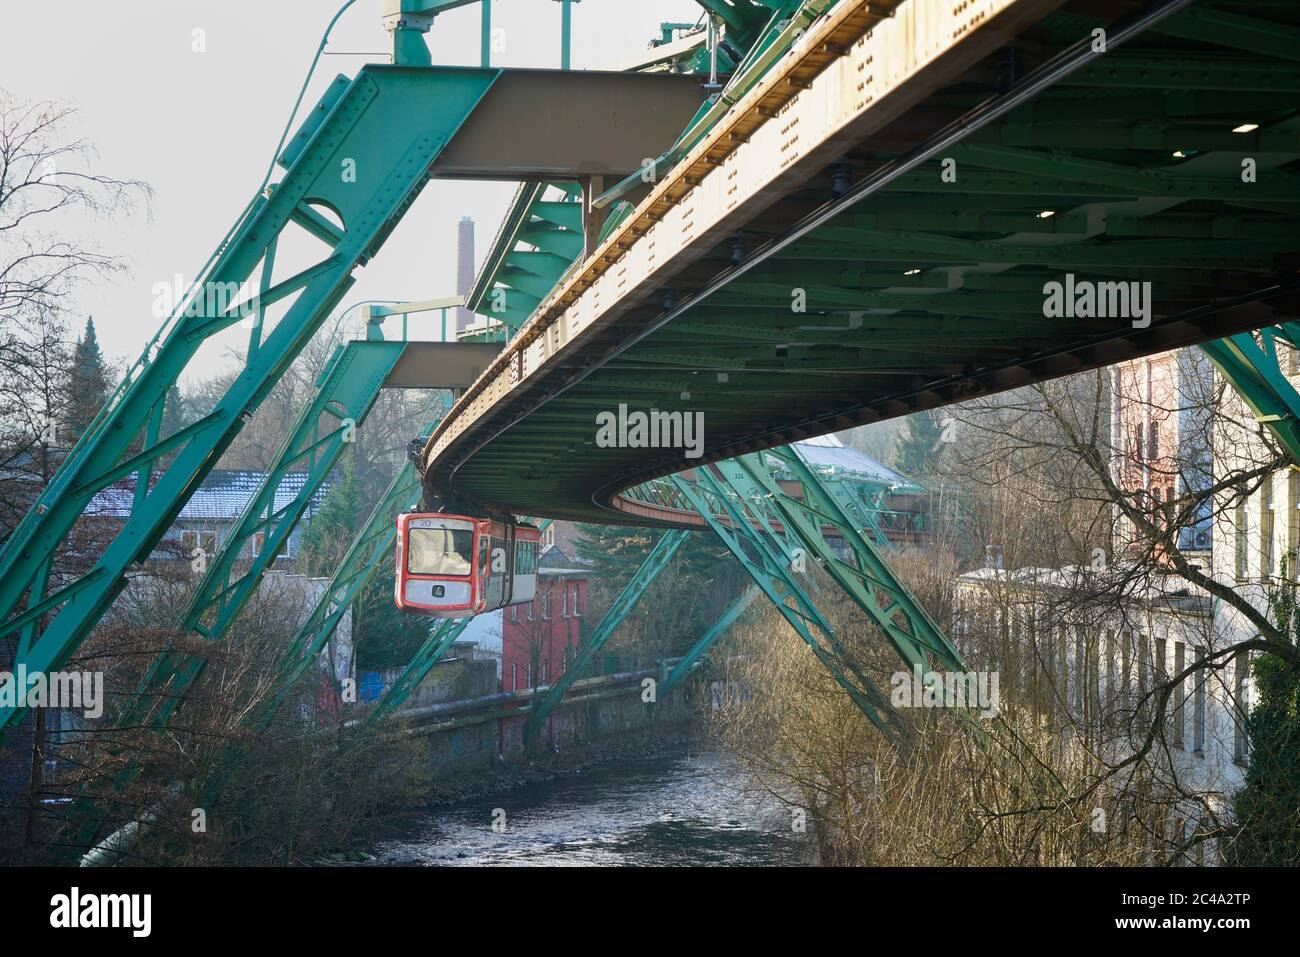 Un train de Wuppertal suspension Railway survole la rivière. Ce système est unique au monde. Banque D'Images